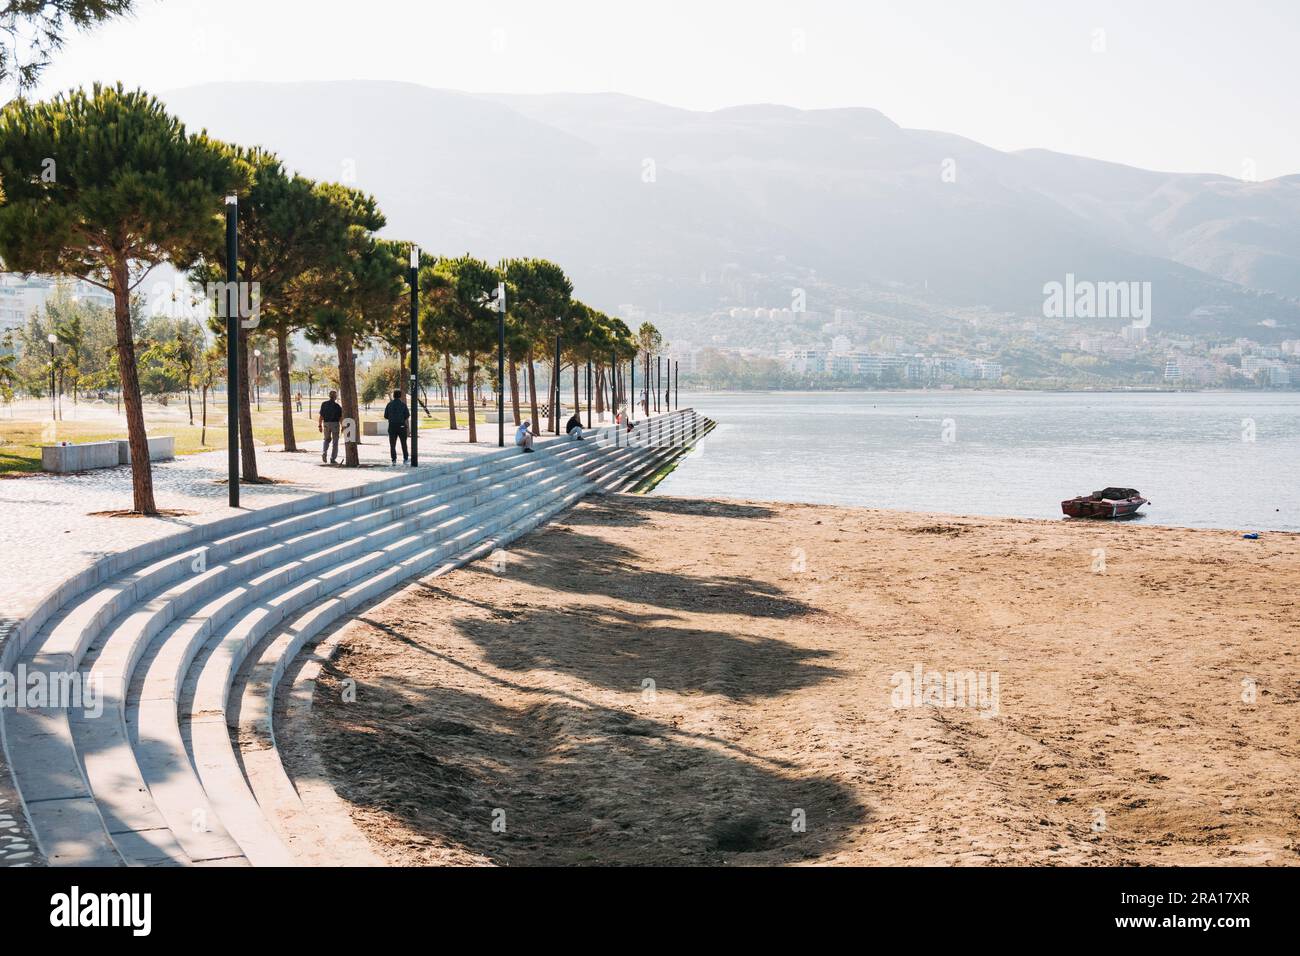 Una piazza fronte mare appena completata finanziata dall'Unione europea nella città costiera di Vlorë, nel sud dell'Albania Foto Stock